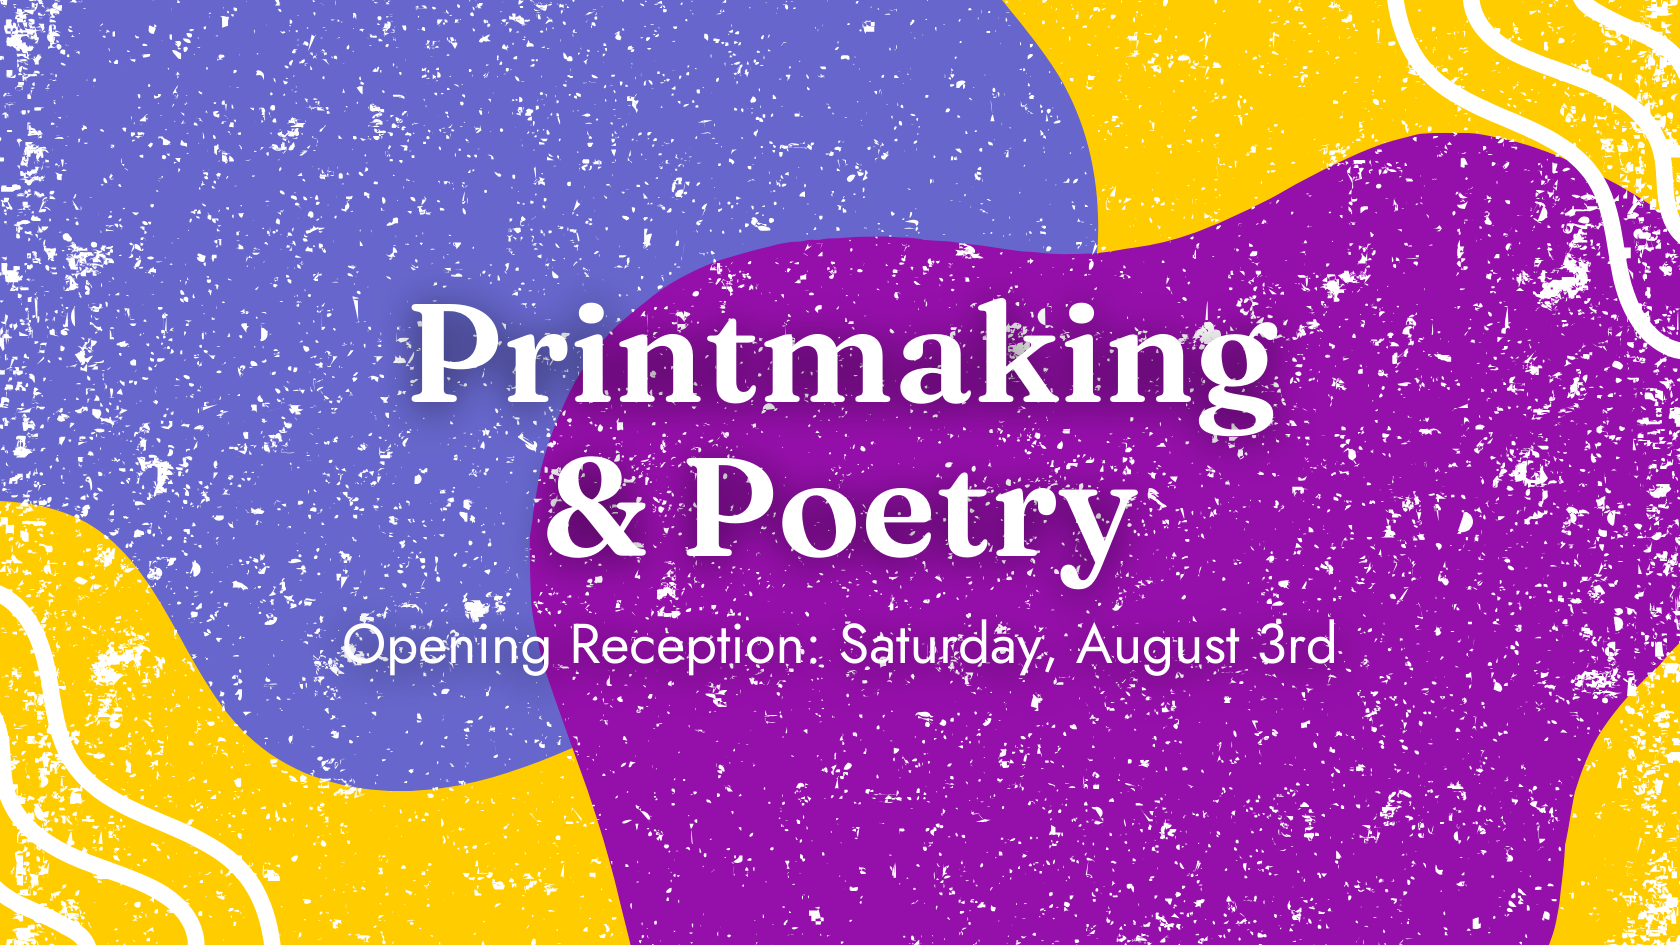 Printmaking & Poetry Exhibition